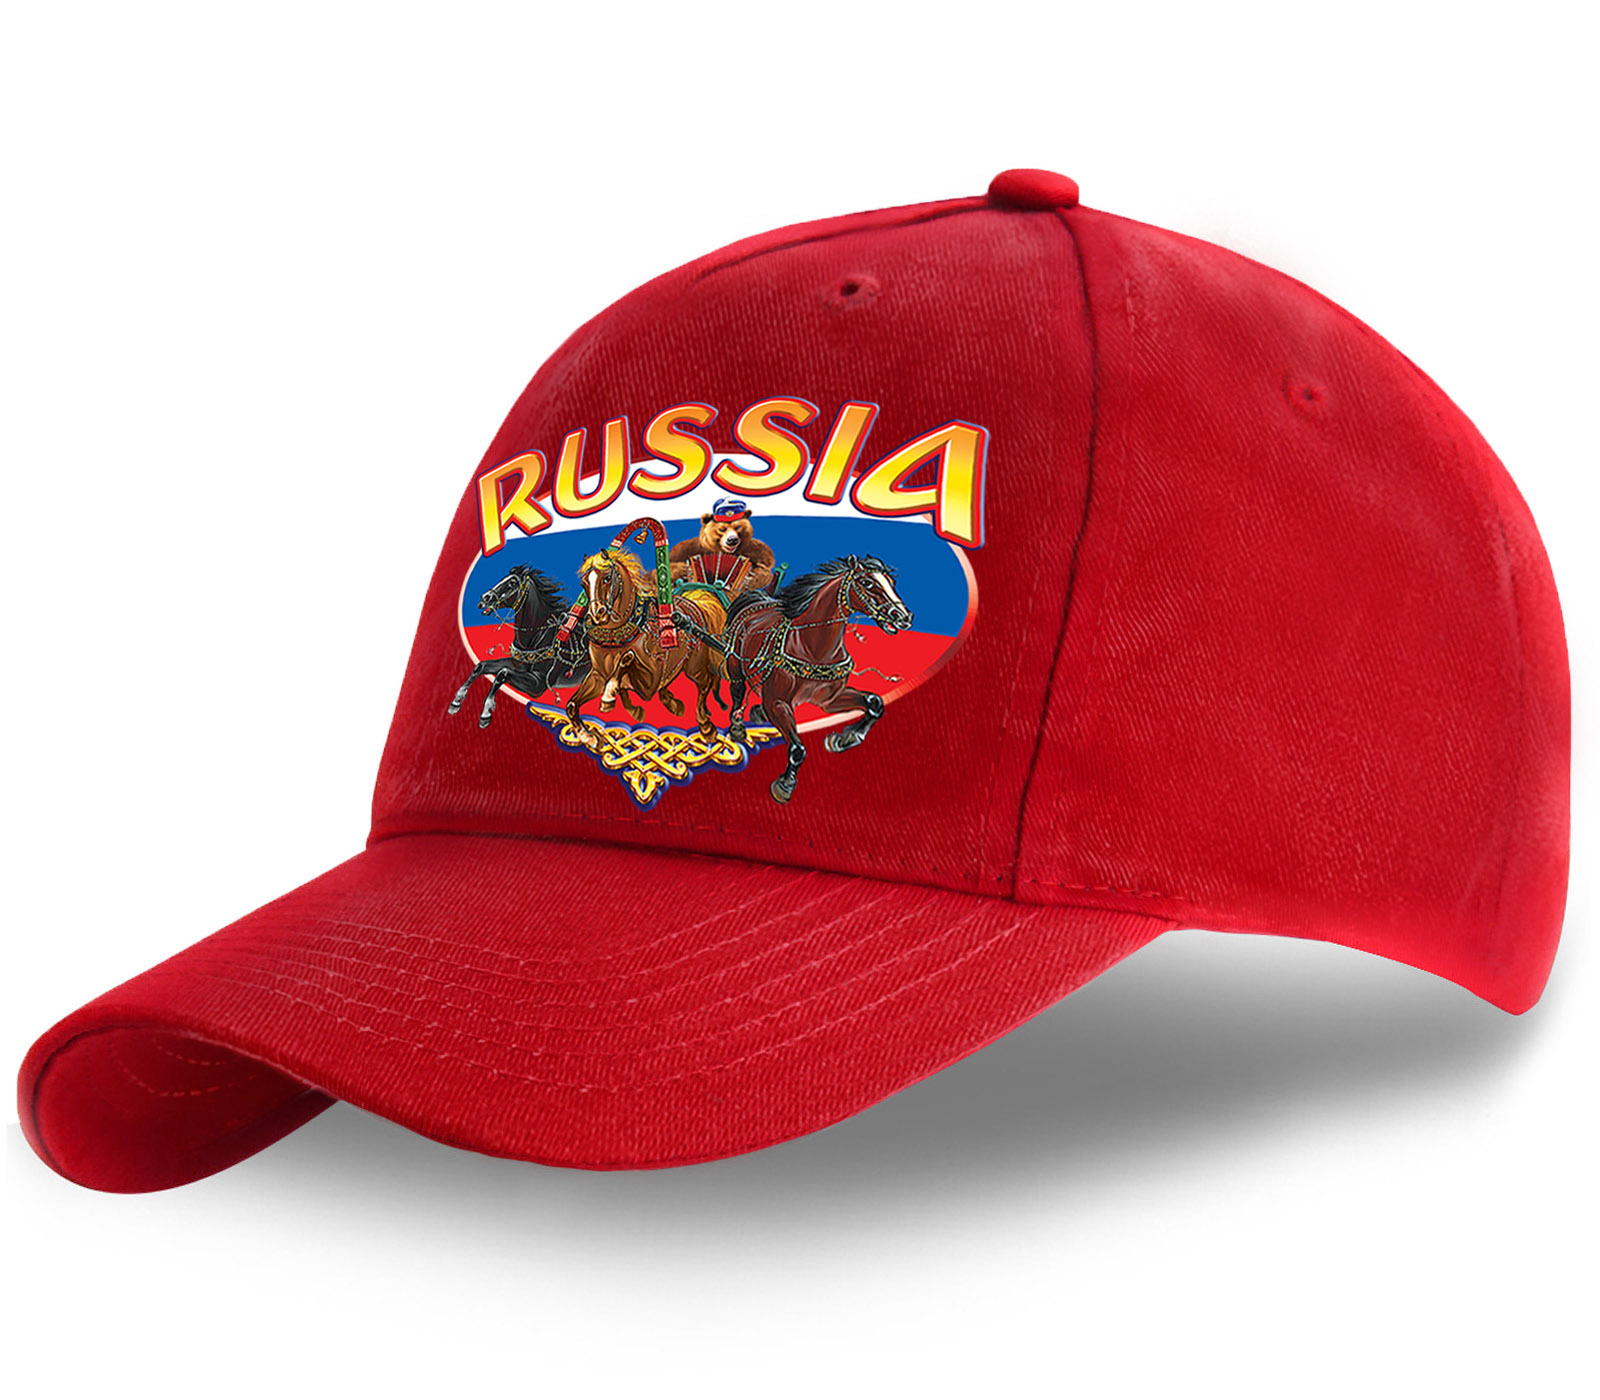 Заказать красную хлопковую бейсболку с авторским колоритным принтом Русская тройка Russia по привлекательной цене